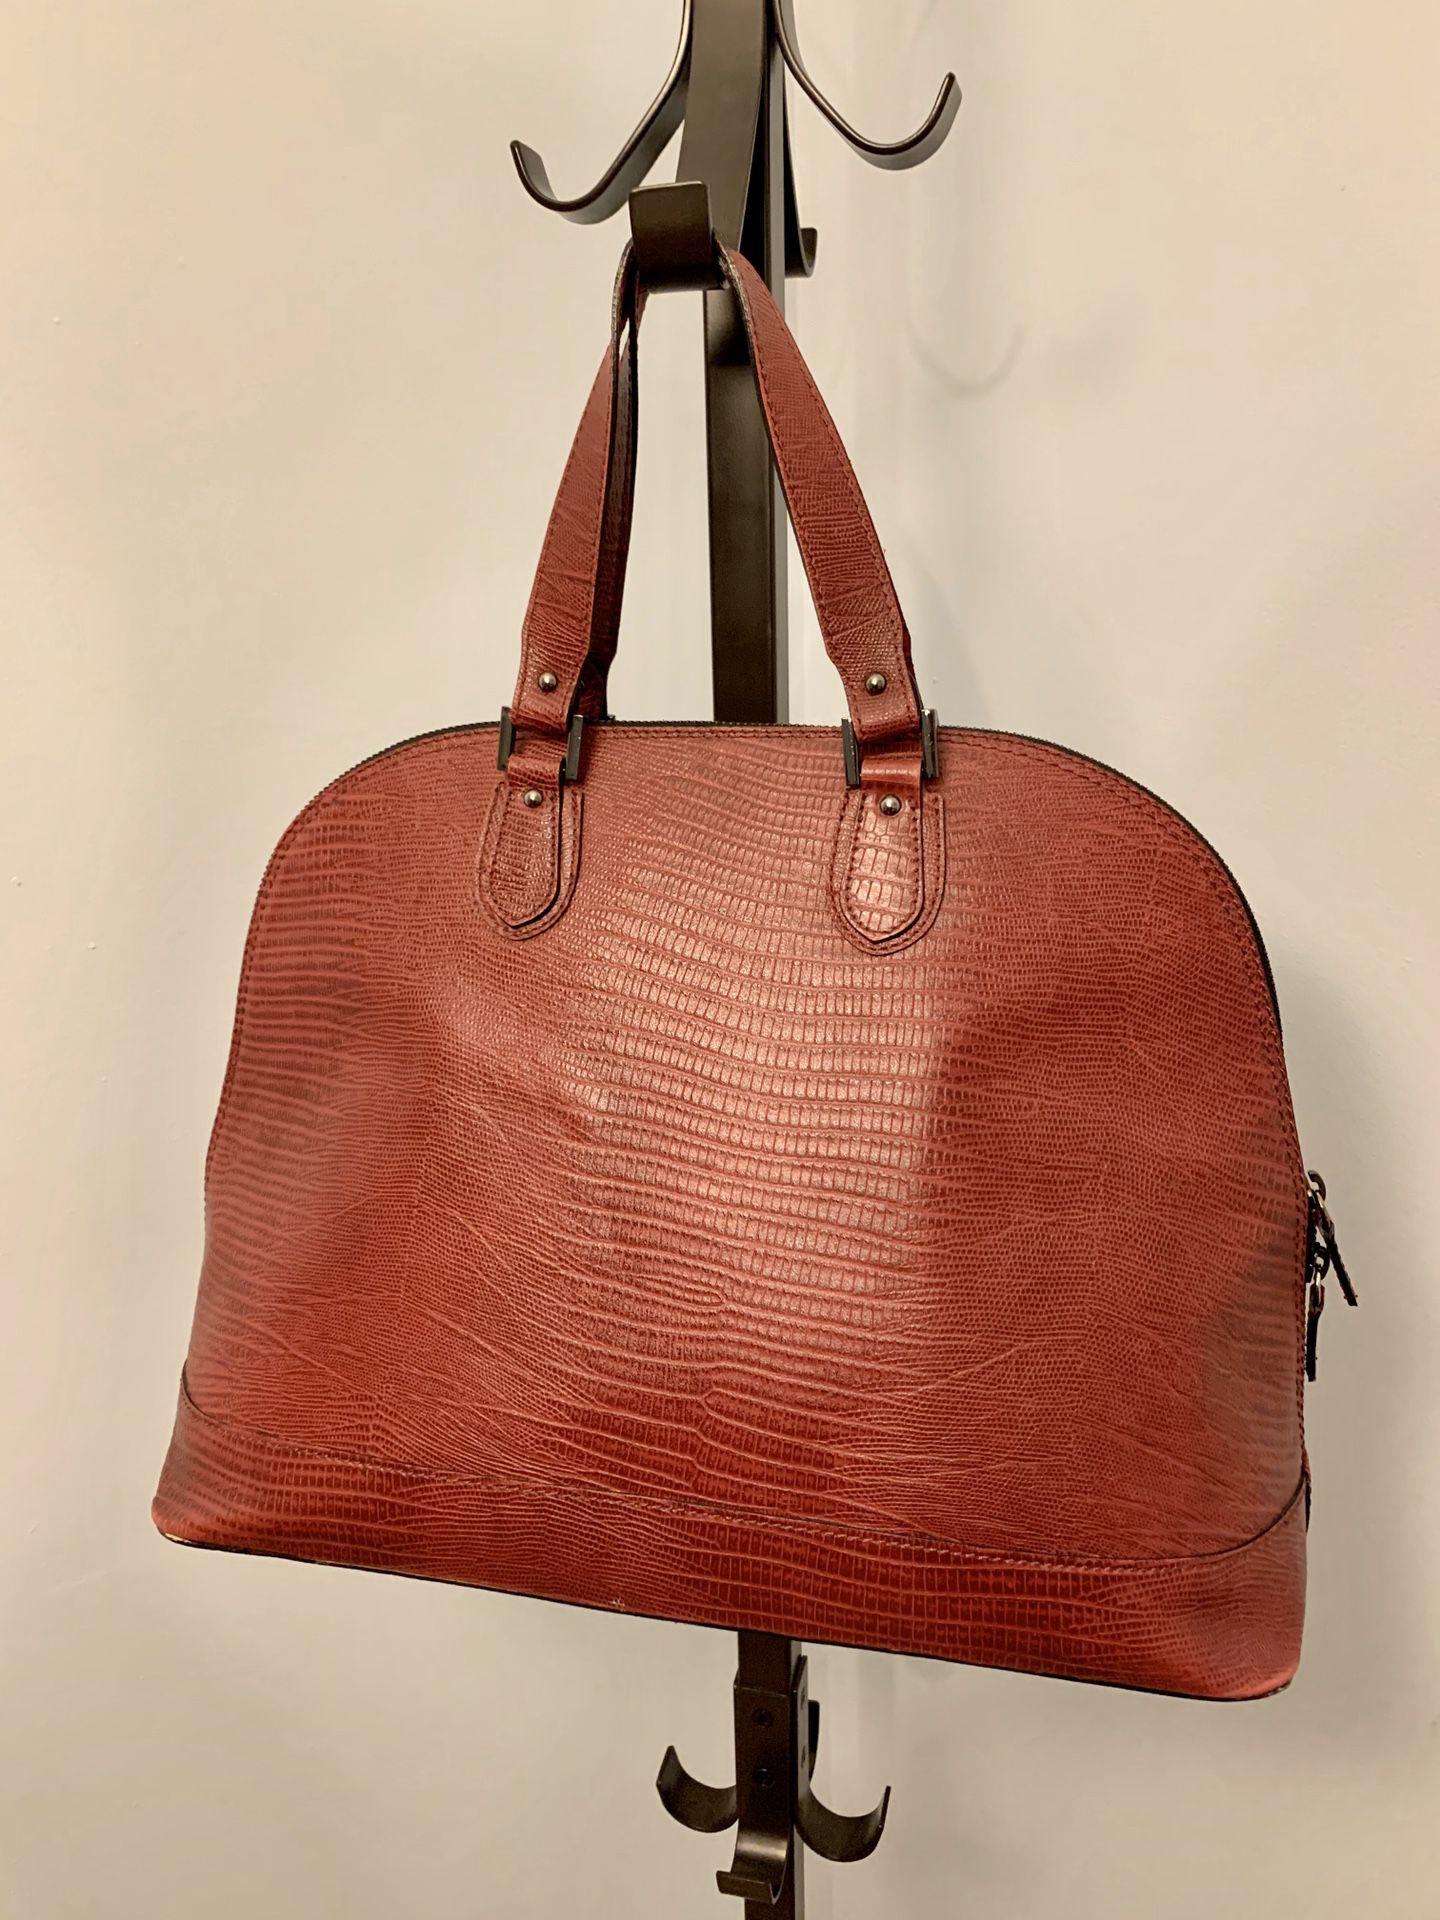 Made in Italy, Italian Leather Handbag